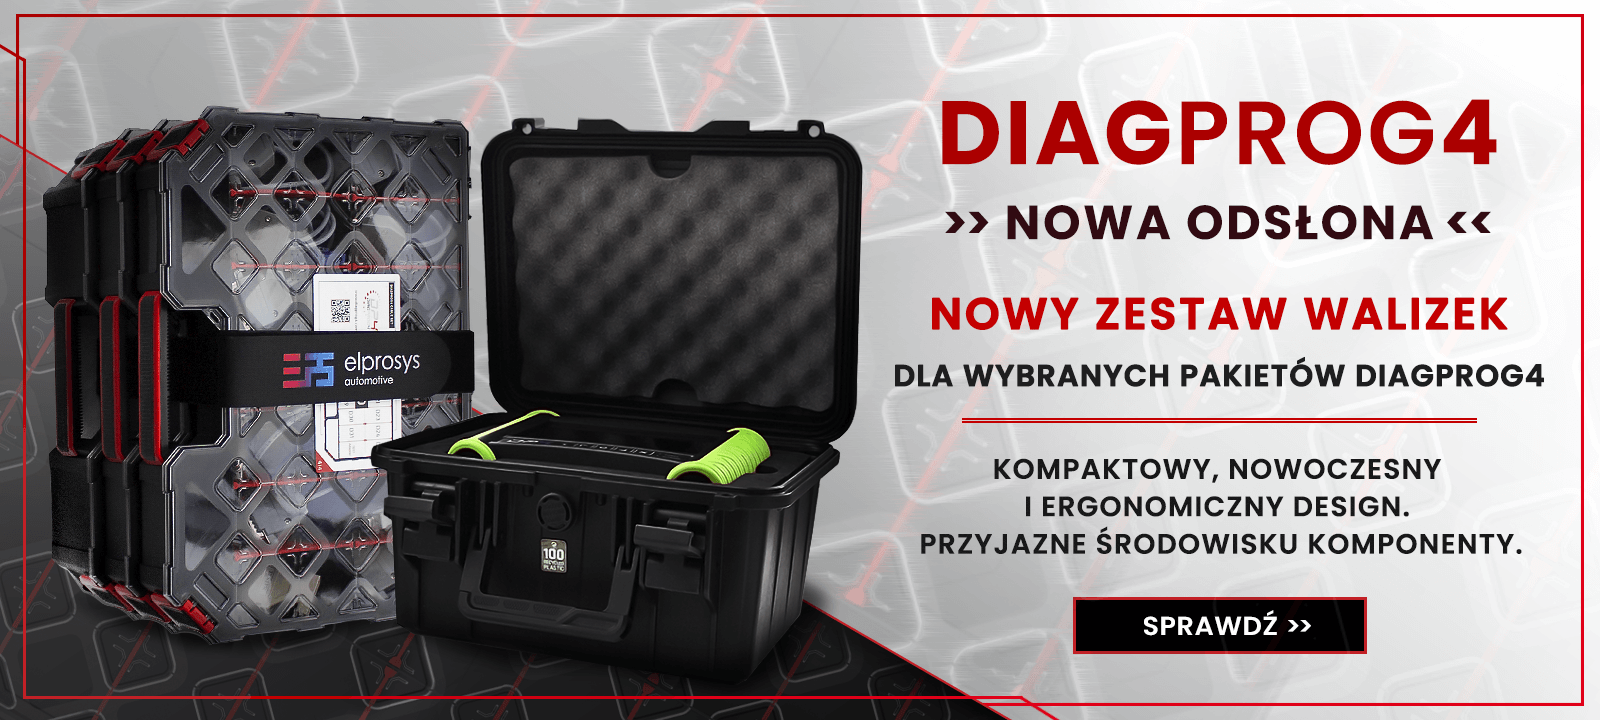 DiagProg4 - Nowy zestaw walizek 